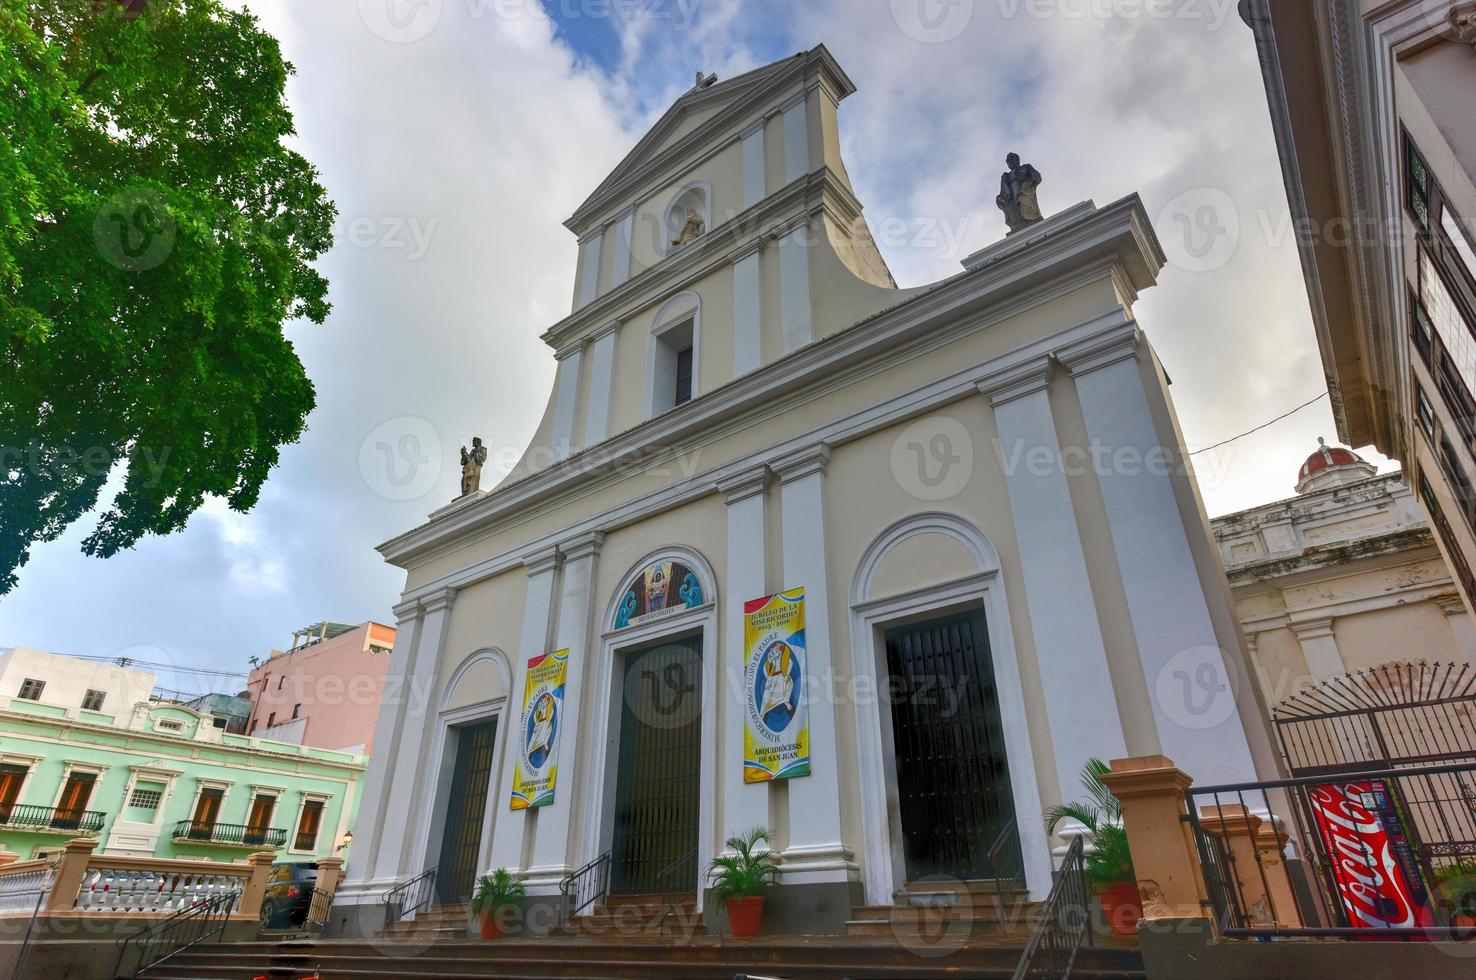 kathedraal van san Juan bautista is een Romeins Katholiek kathedraal in oud san juan, puerto rico. deze kerk is gebouwd in 1521 en is de oudste kerk in de Verenigde staten. foto